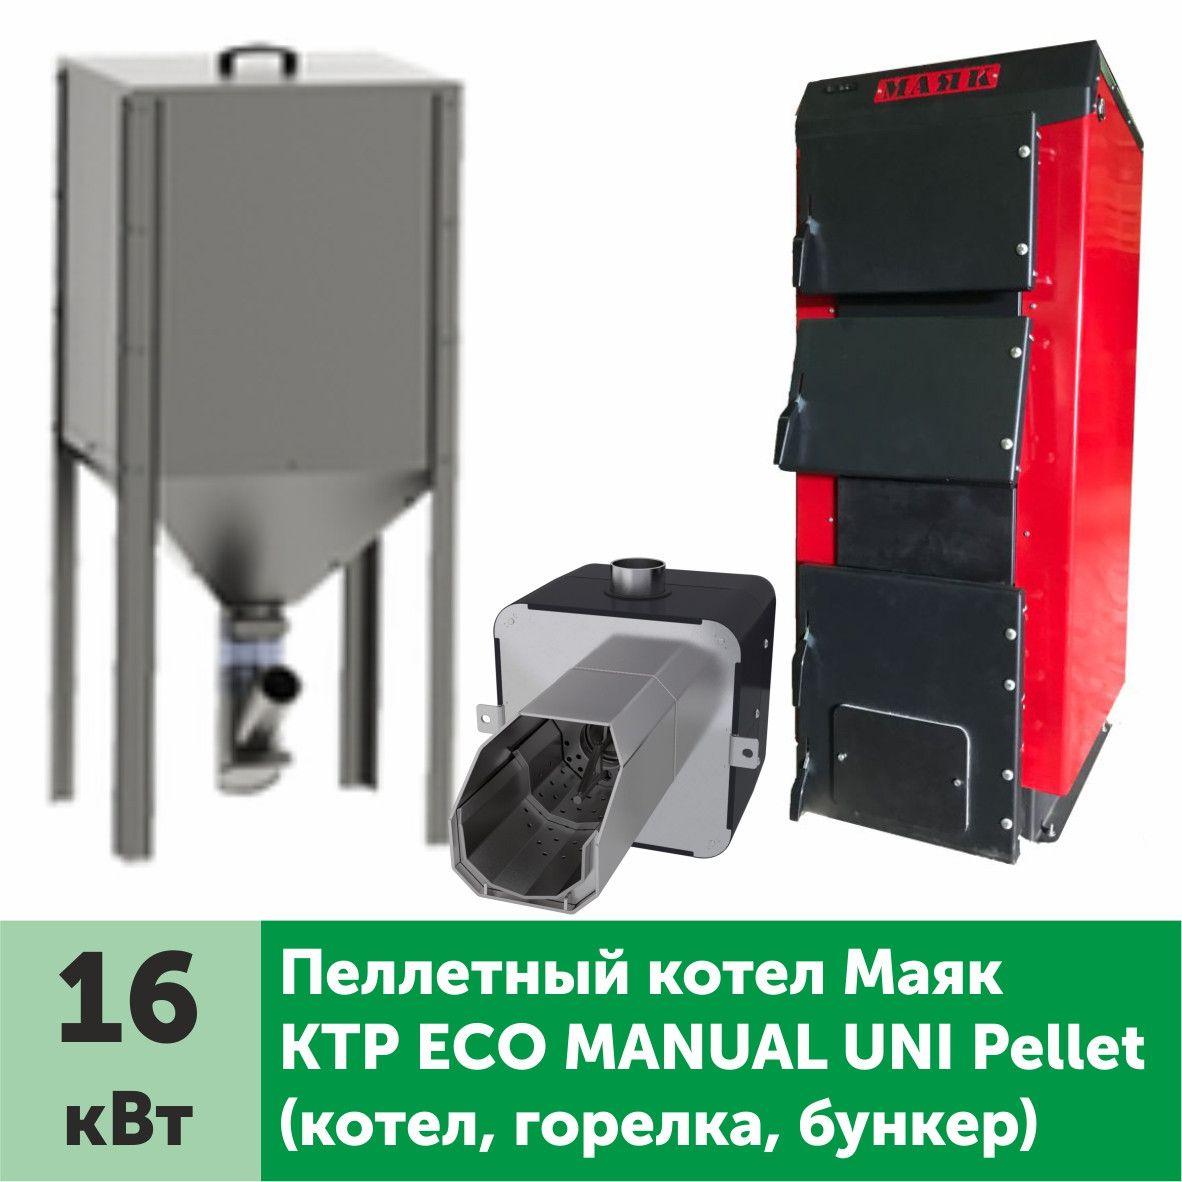 Пеллетный котел МАЯК КТР Eco Manual Uni Pellet 16 кВт